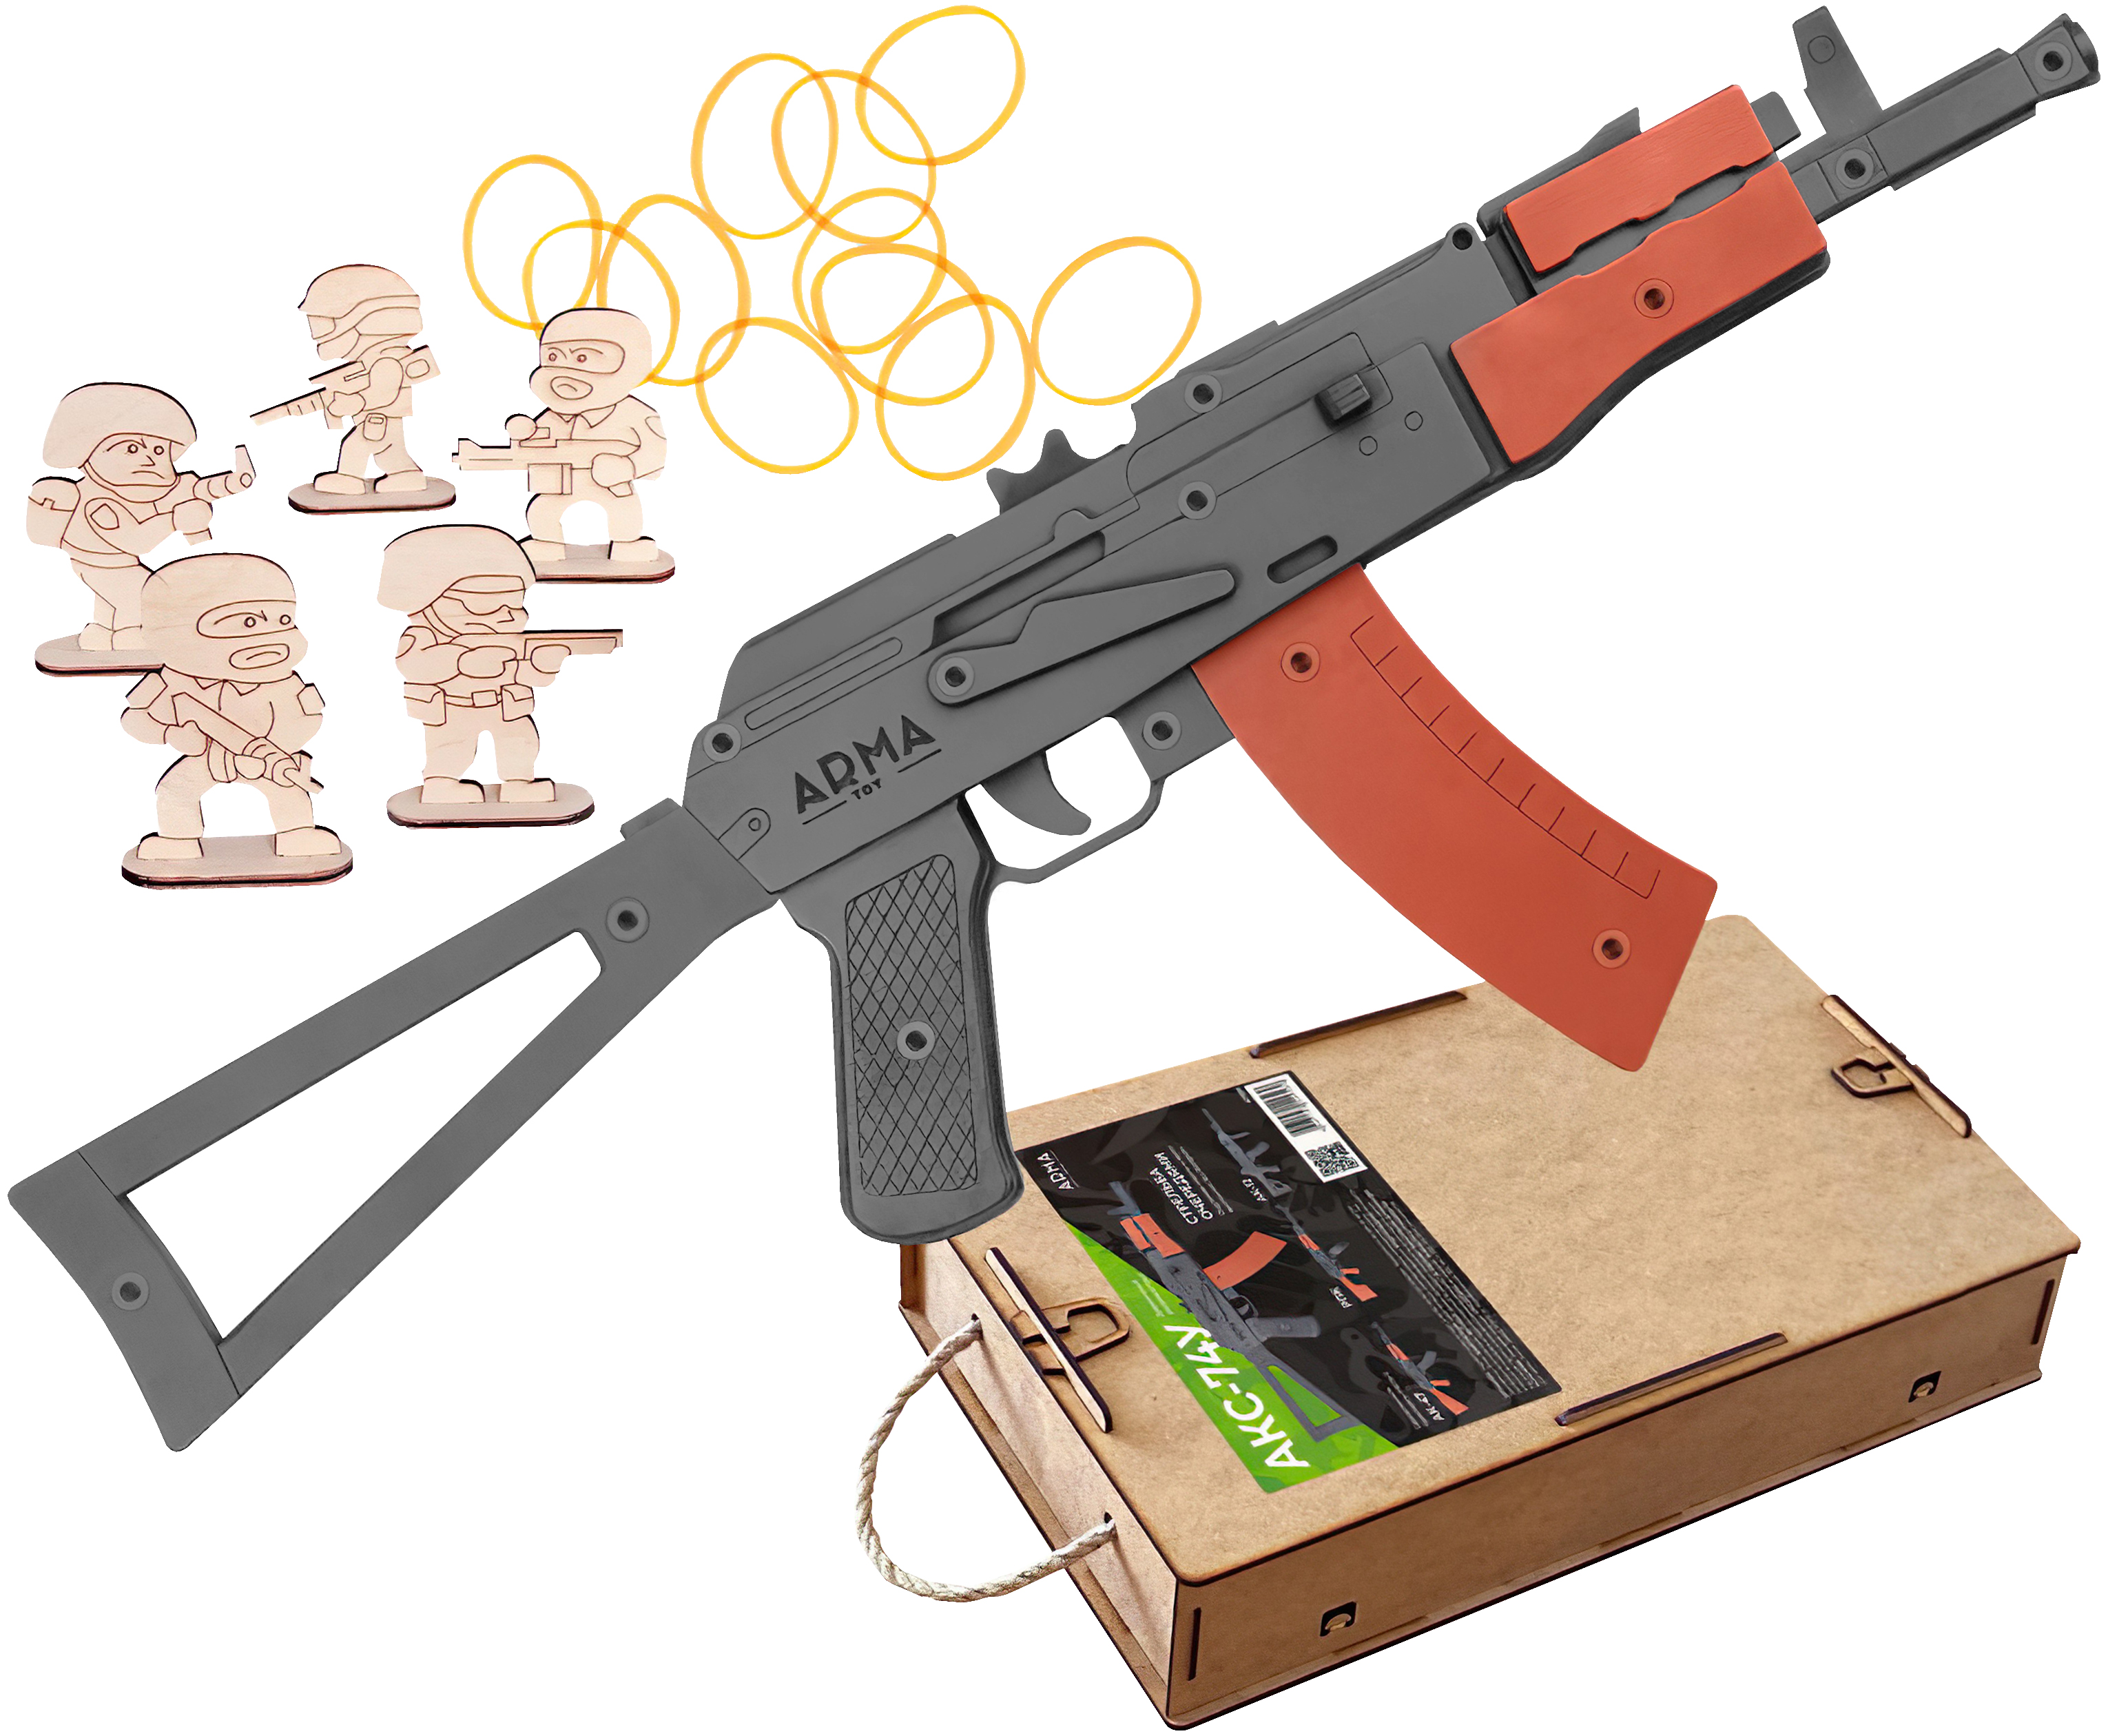 Резинкострел игрушечный Arma toys автомат АКС-74У макет, Калашников, AT036 резинкострел arma toys револьвер frings макет ат002